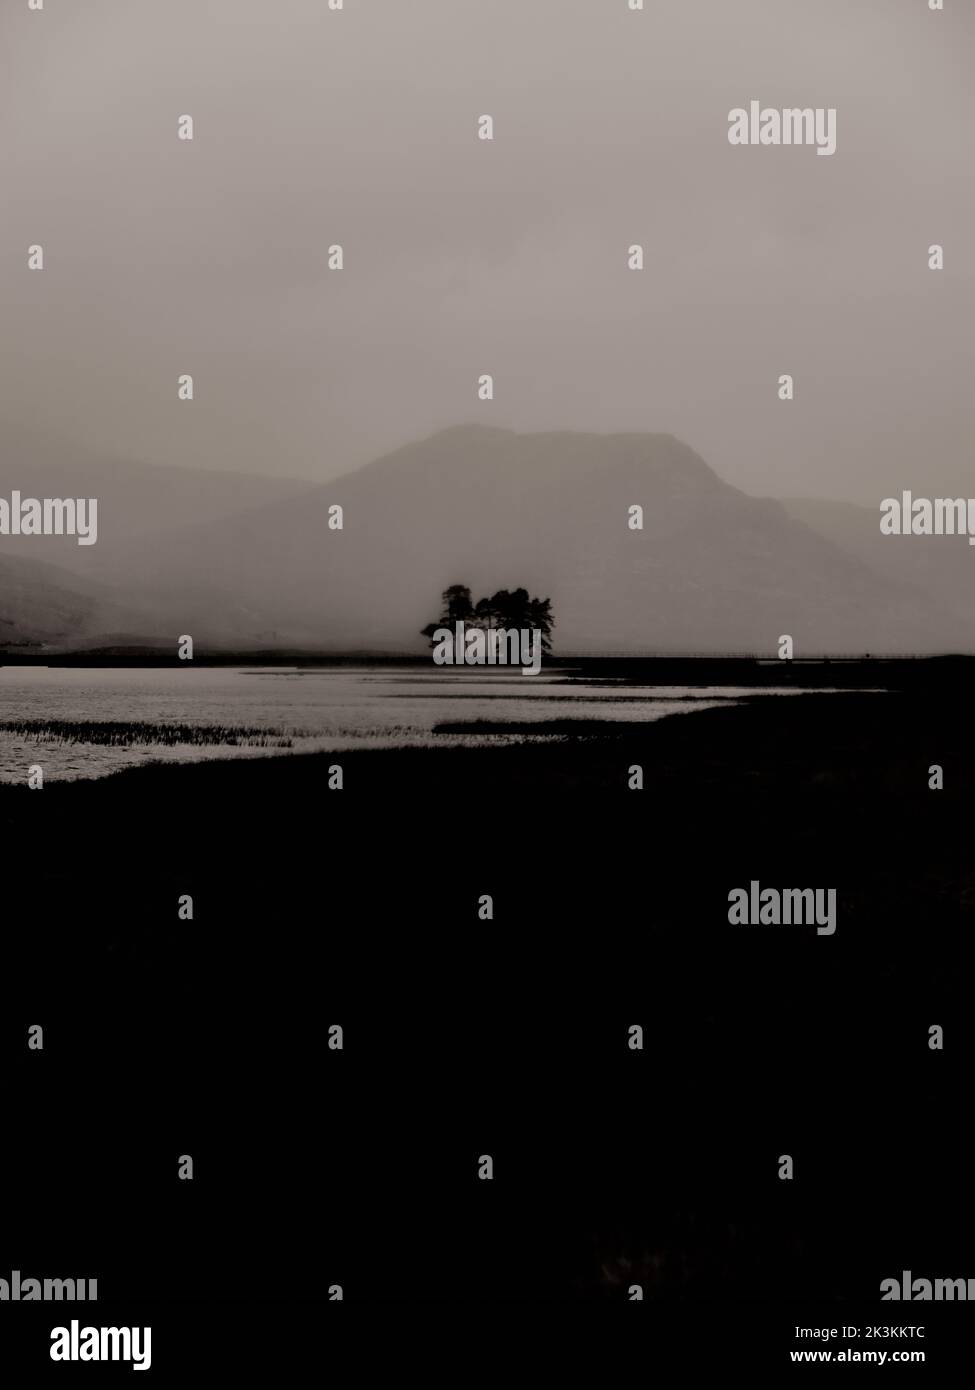 Ein minimalistischer dunkler, geheimnisvoller, verschwommener Baumregen und eine Berglandschaft - s/w-Grafik im lith-Look ein stimmungsvoller Gothic Buchcover-Hintergrund Stockfoto